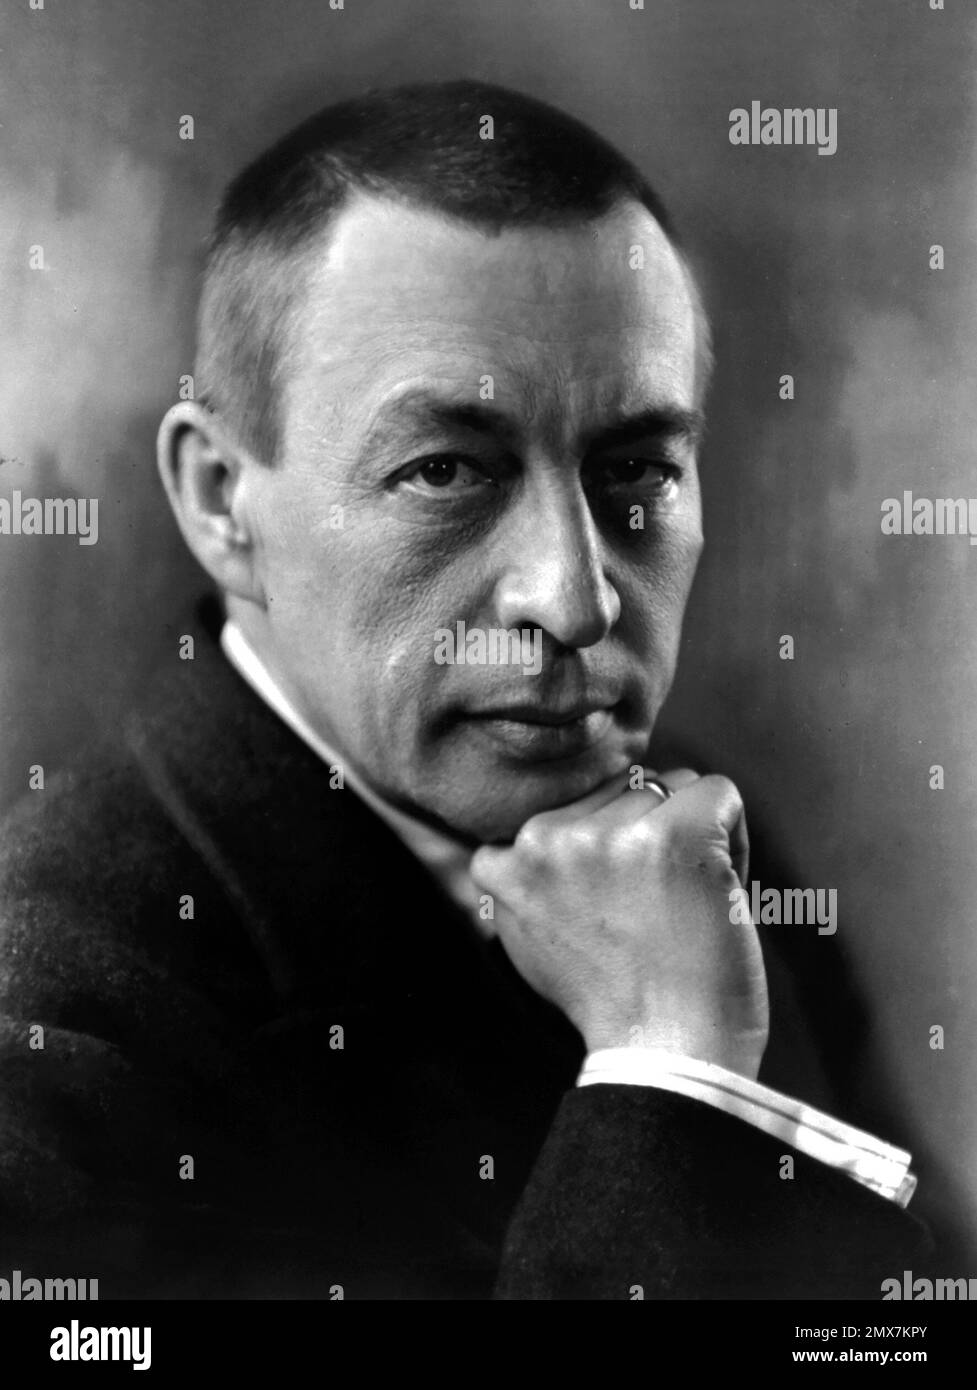 Sergei Rachmaninoff. Ritratto del compositore e pianista russo-americano Sergei Vasilyevich Rachmaninoff (1873-1943), 1921 Foto Stock